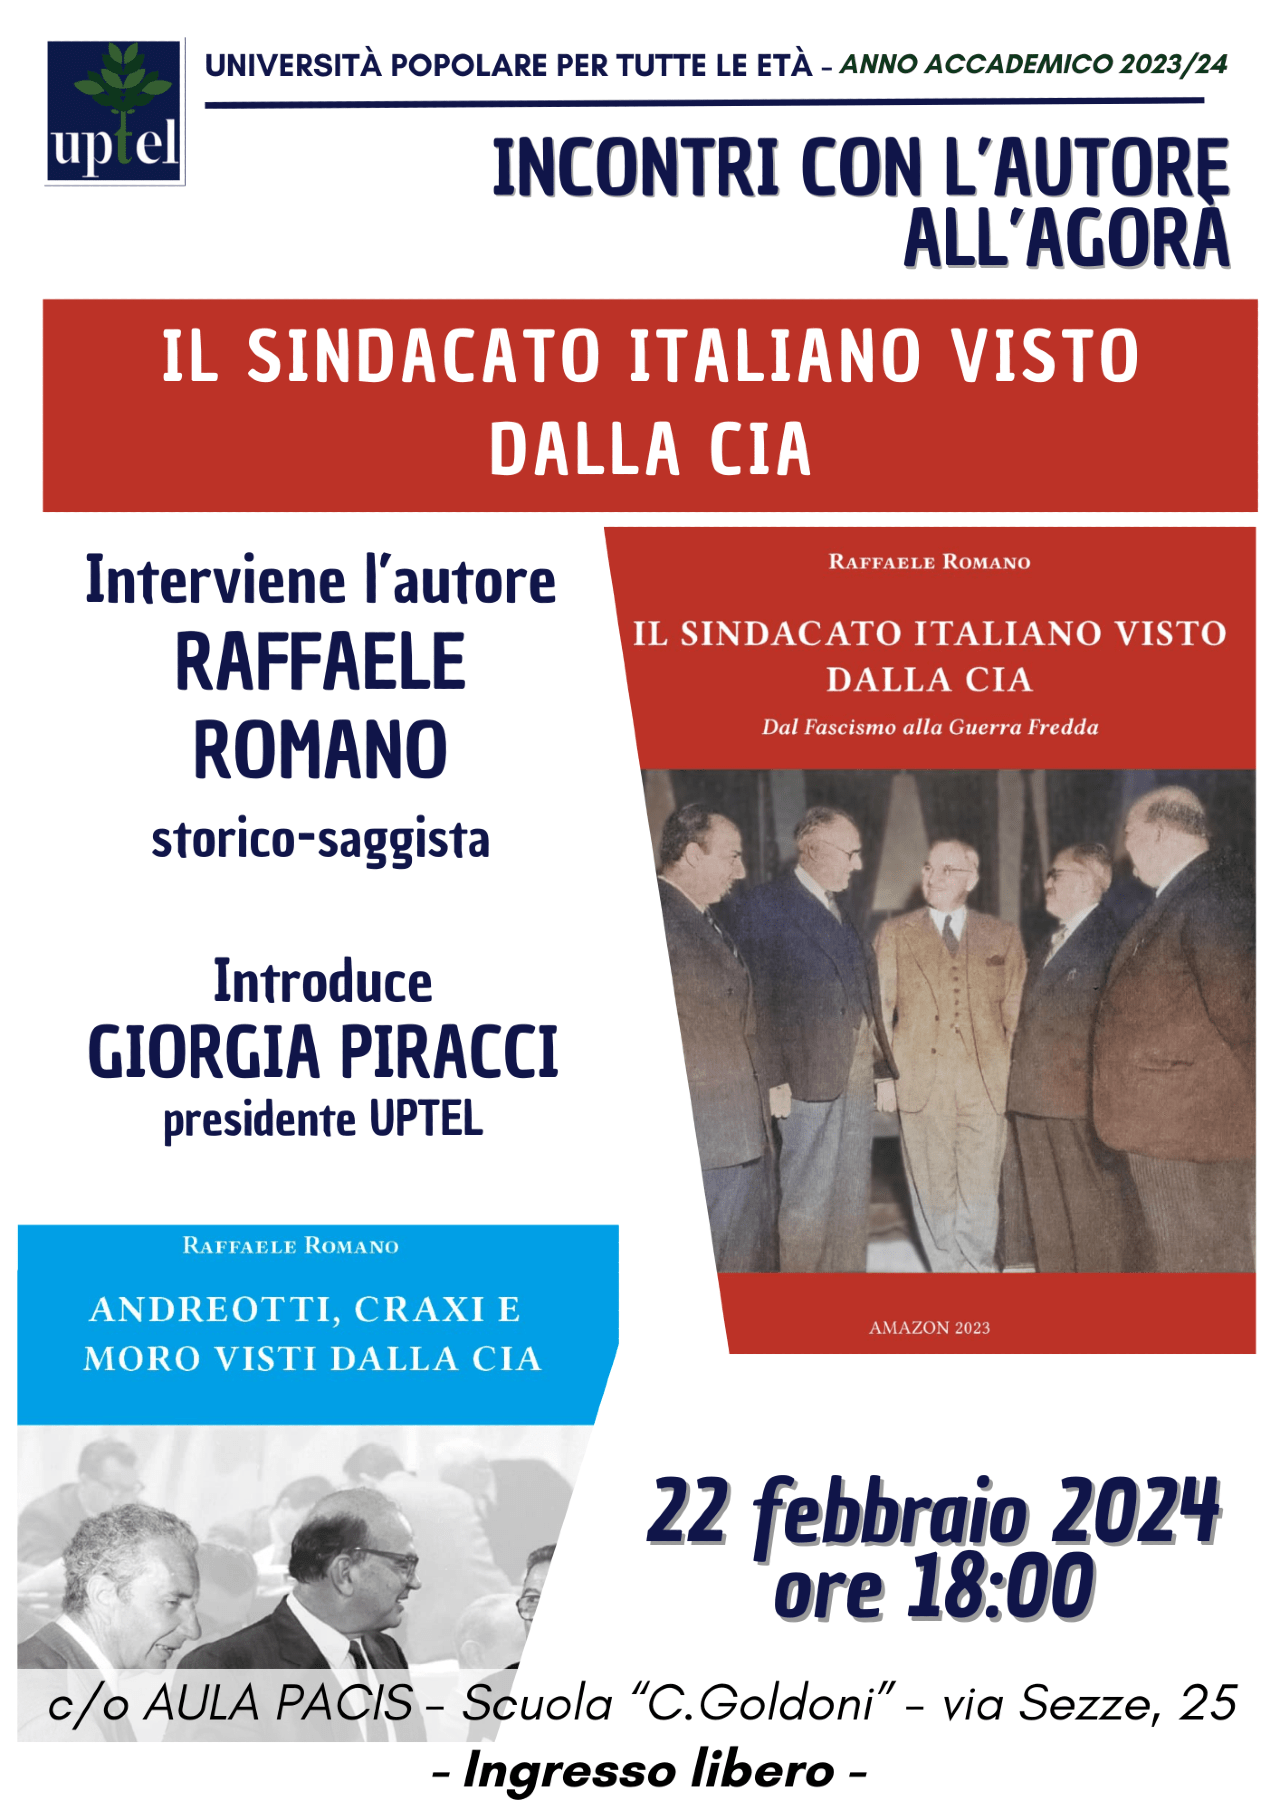 Presentazione e incontro con l’autore Raffaele Romano